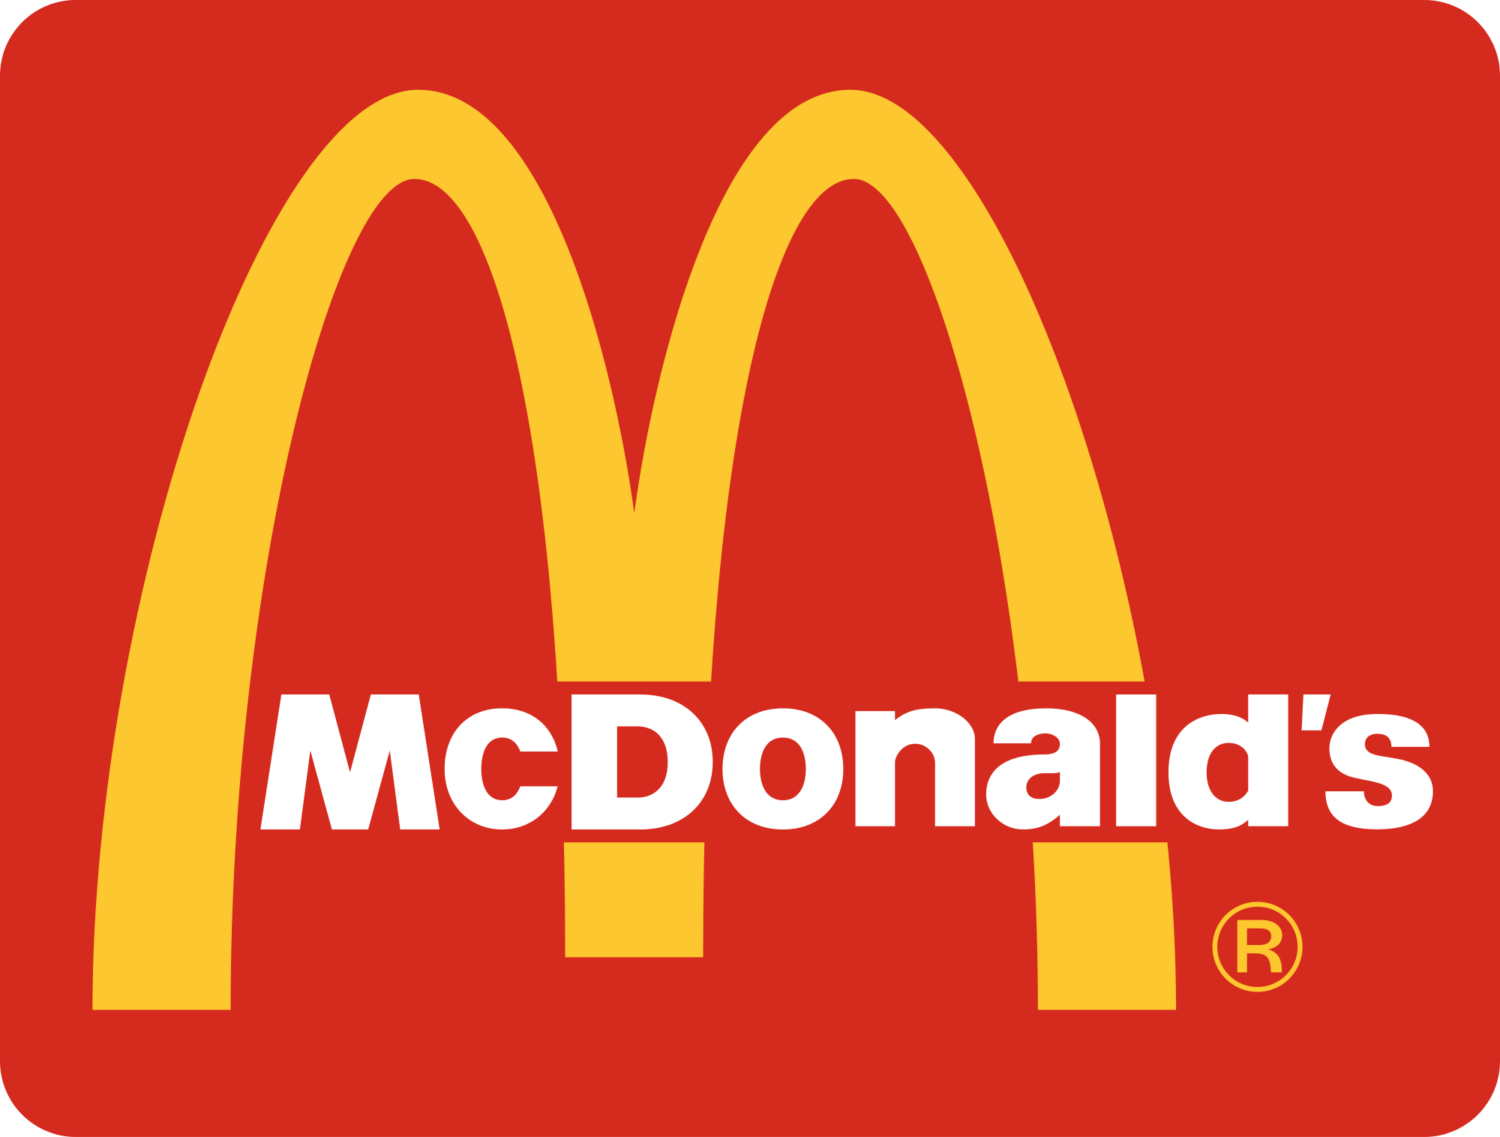 McDonalds-McD-Brand-Awareness-Brand-Rebranding-Dreambox-Branding-Consultant-Agency-Indonesia-Jakarta-Singapore